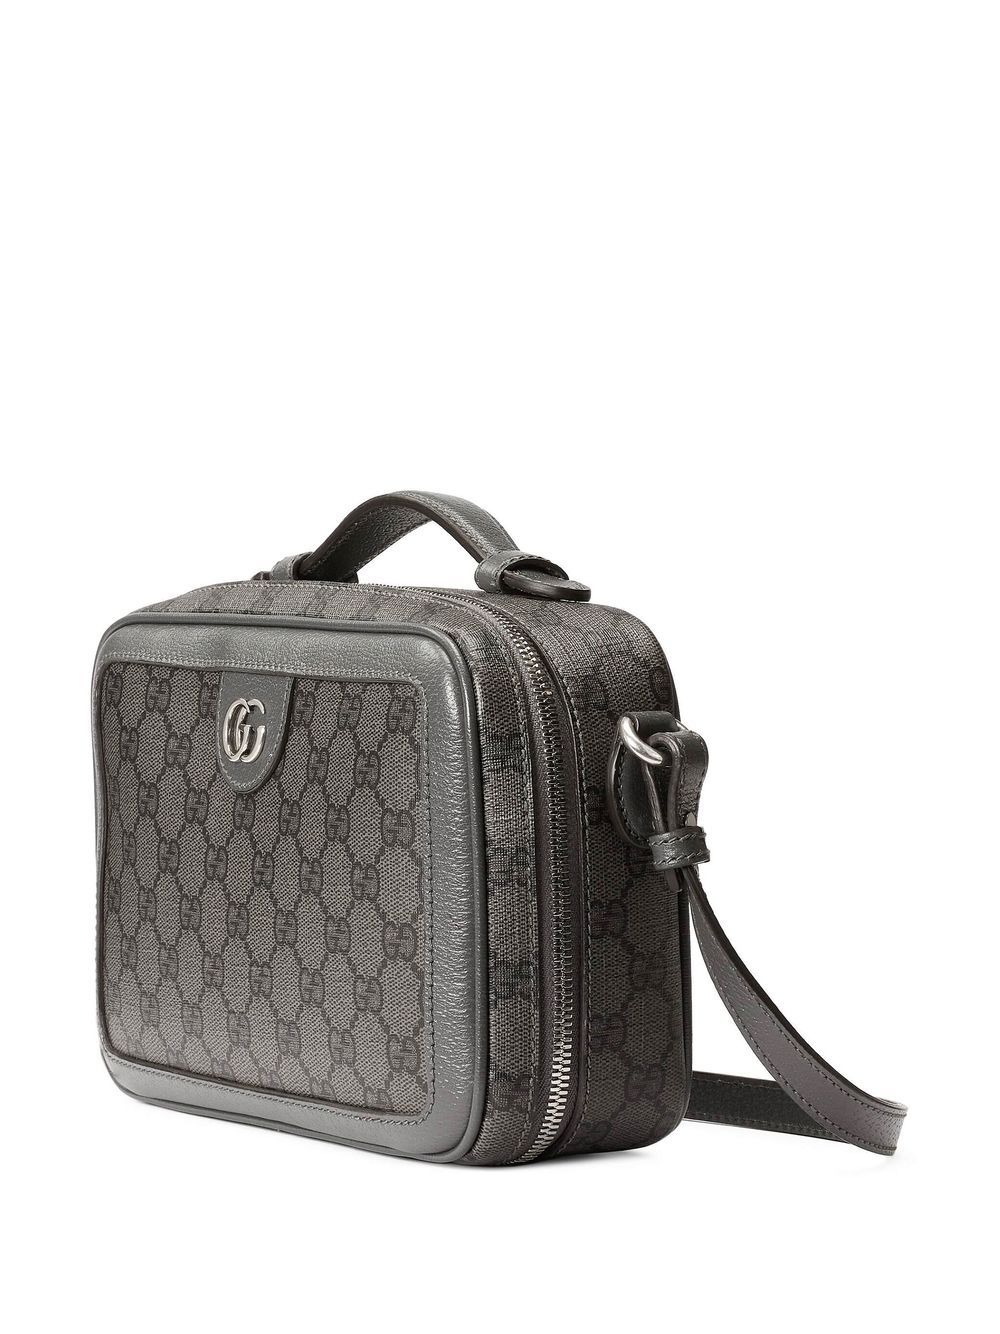 Gucci Black Gg Marmont Small Bag, $2,900, farfetch.com